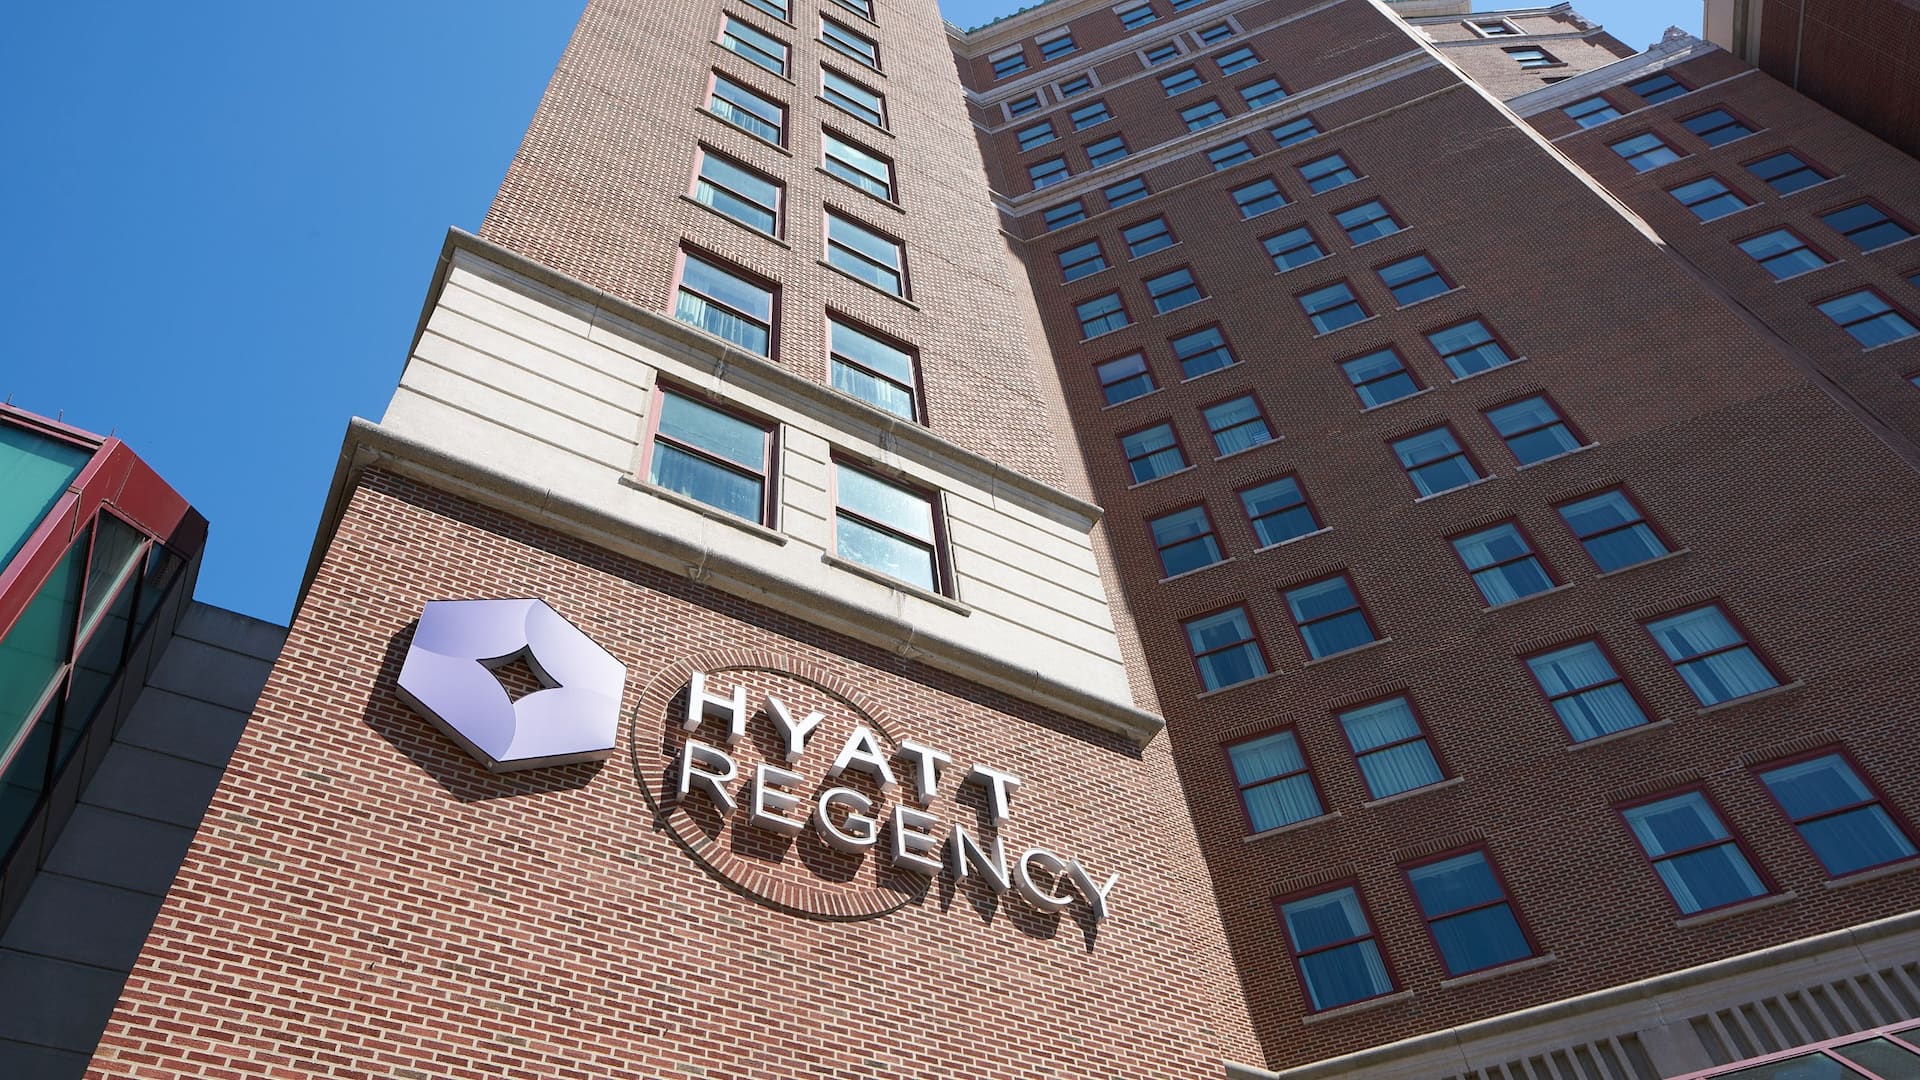 Hyatt Regency Buffalo Exterior Signage